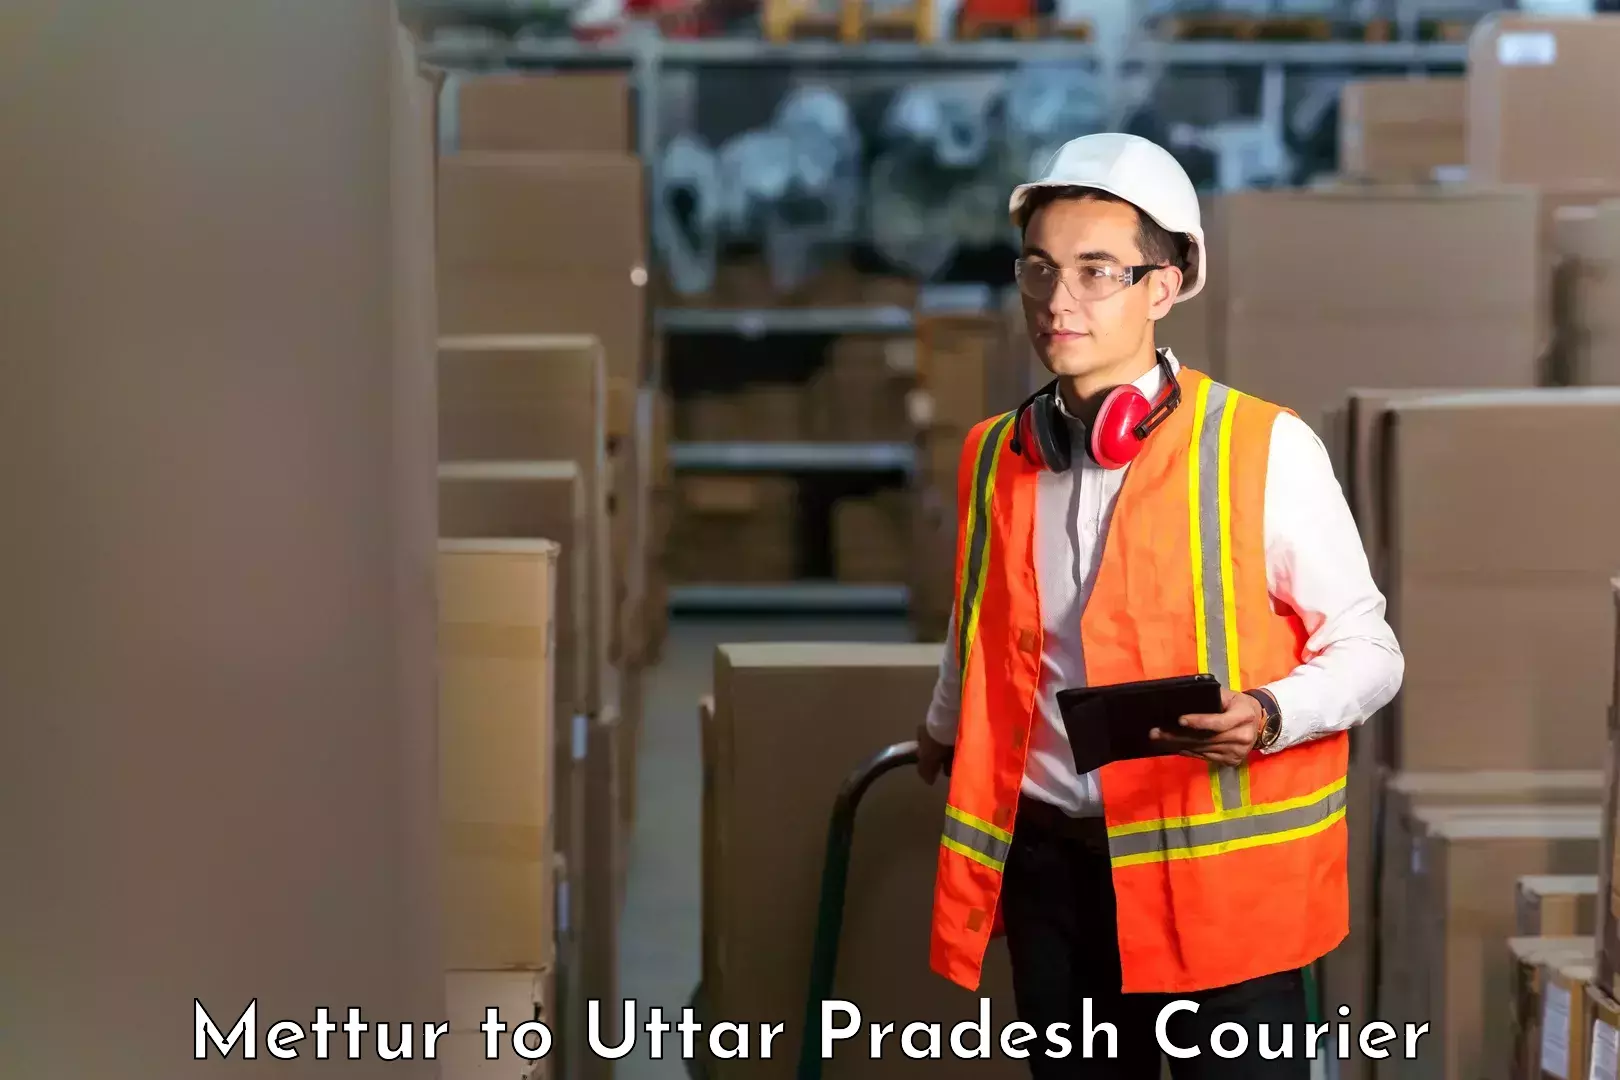 Courier service comparison Mettur to Tilhar